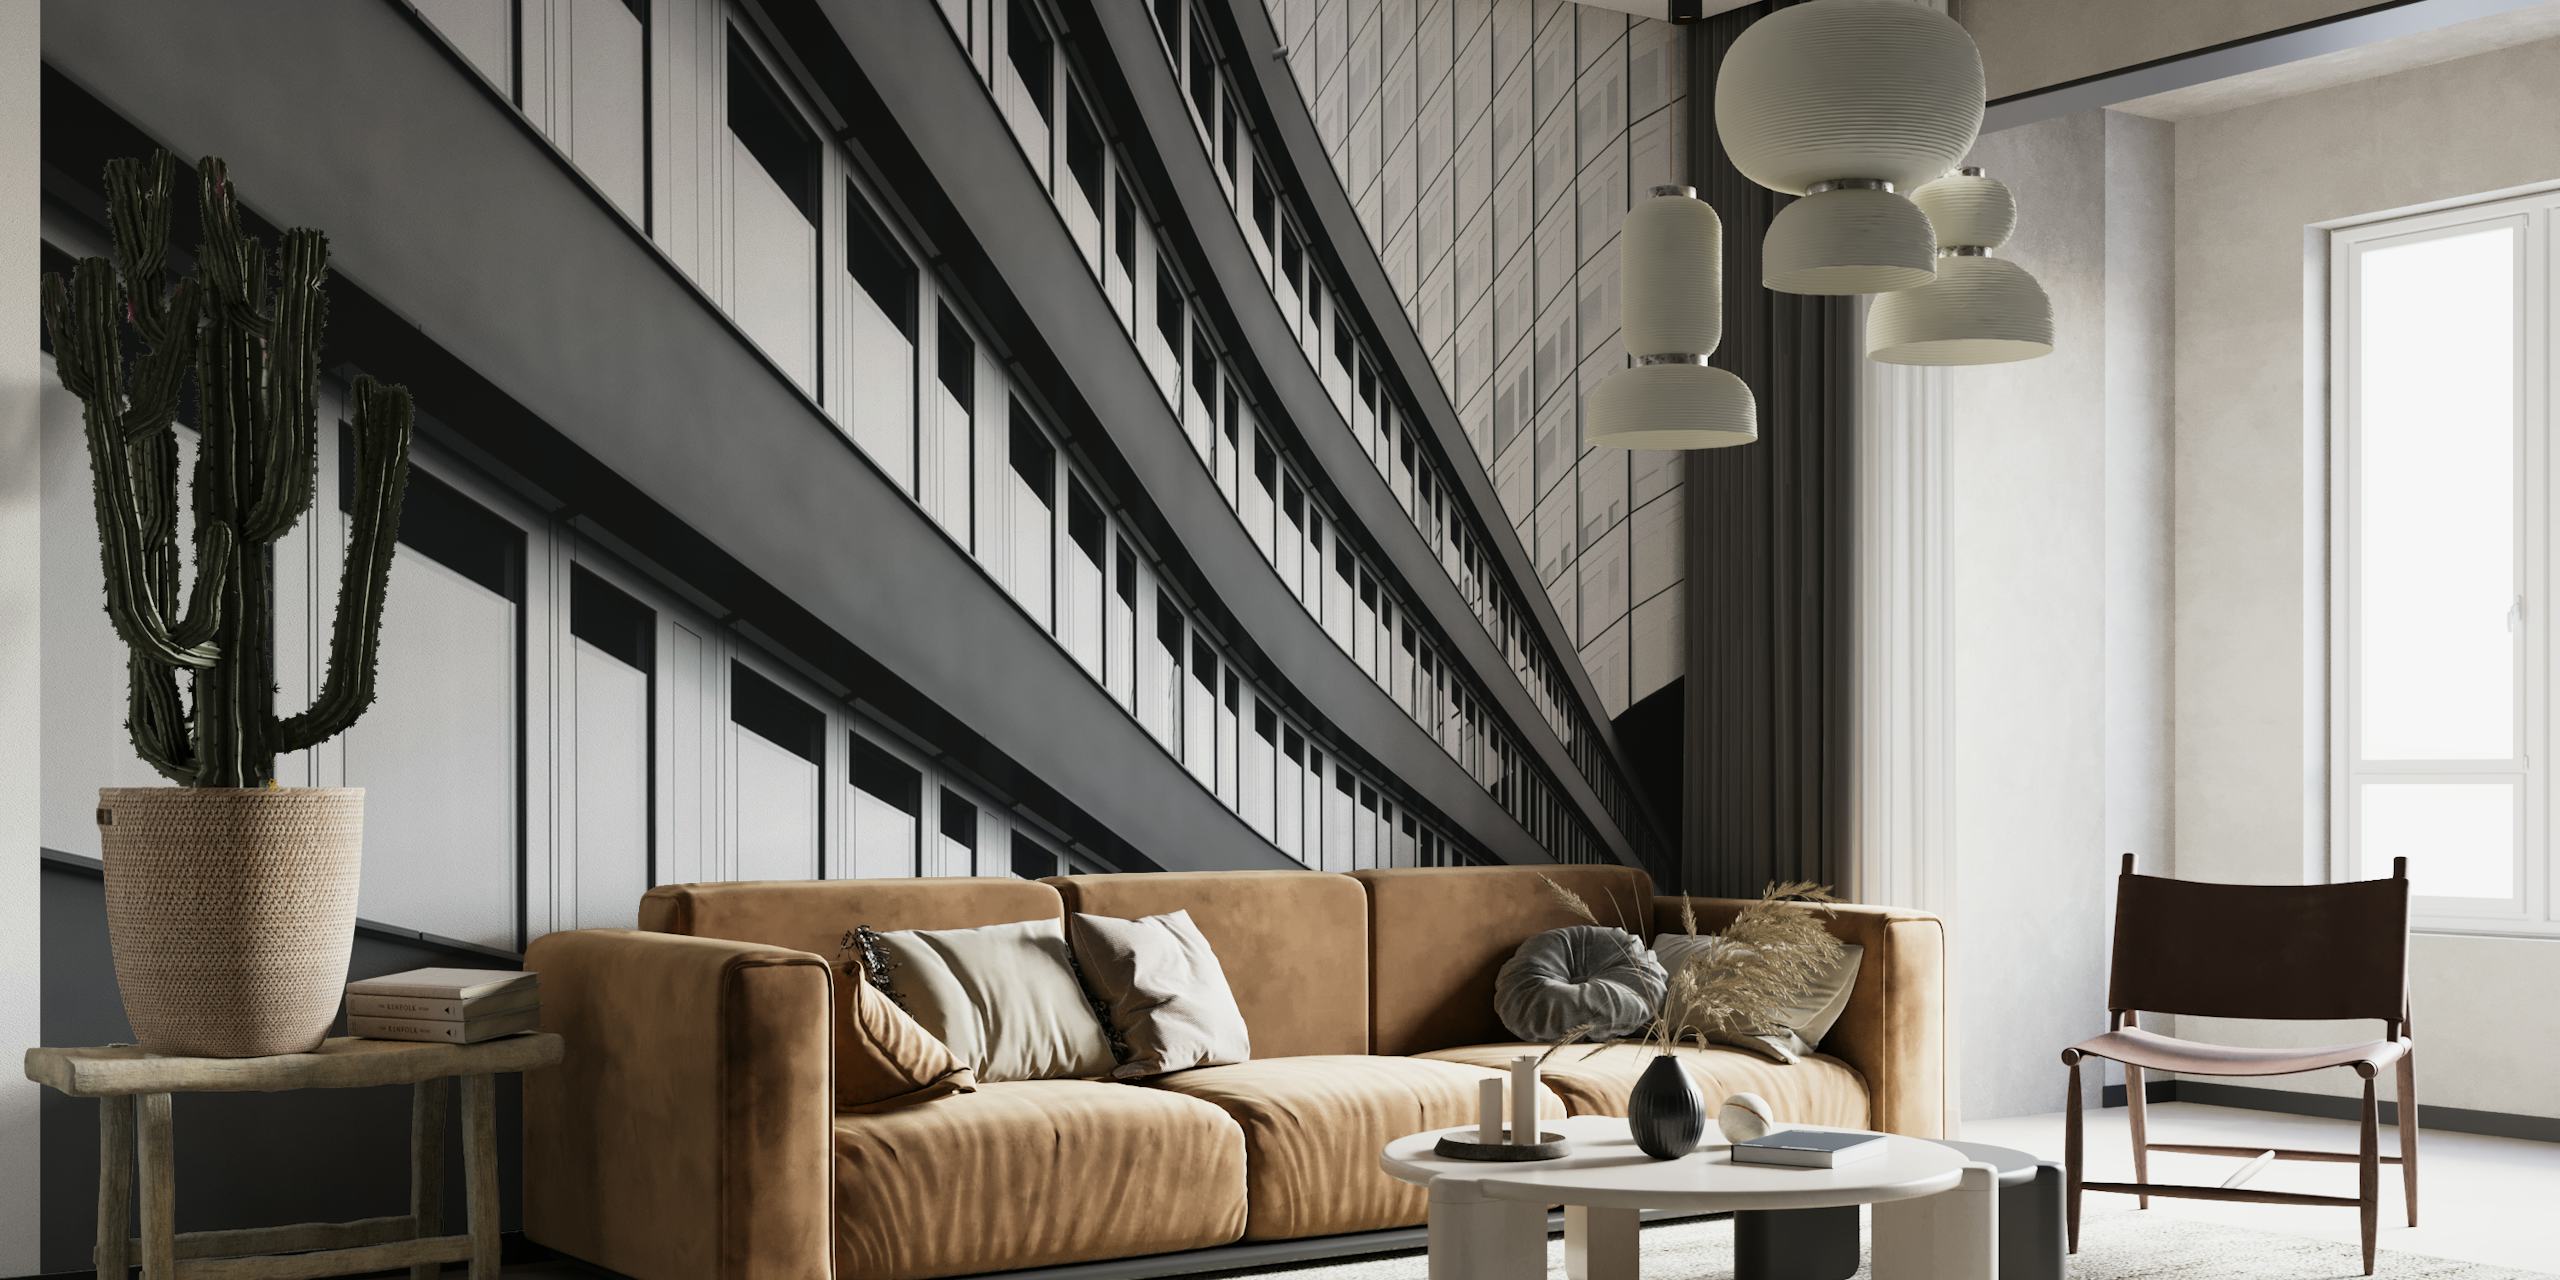 Svart og hvitt veggmaleri med moderne arkitektoniske linjer fra en arbeidsplassbygning